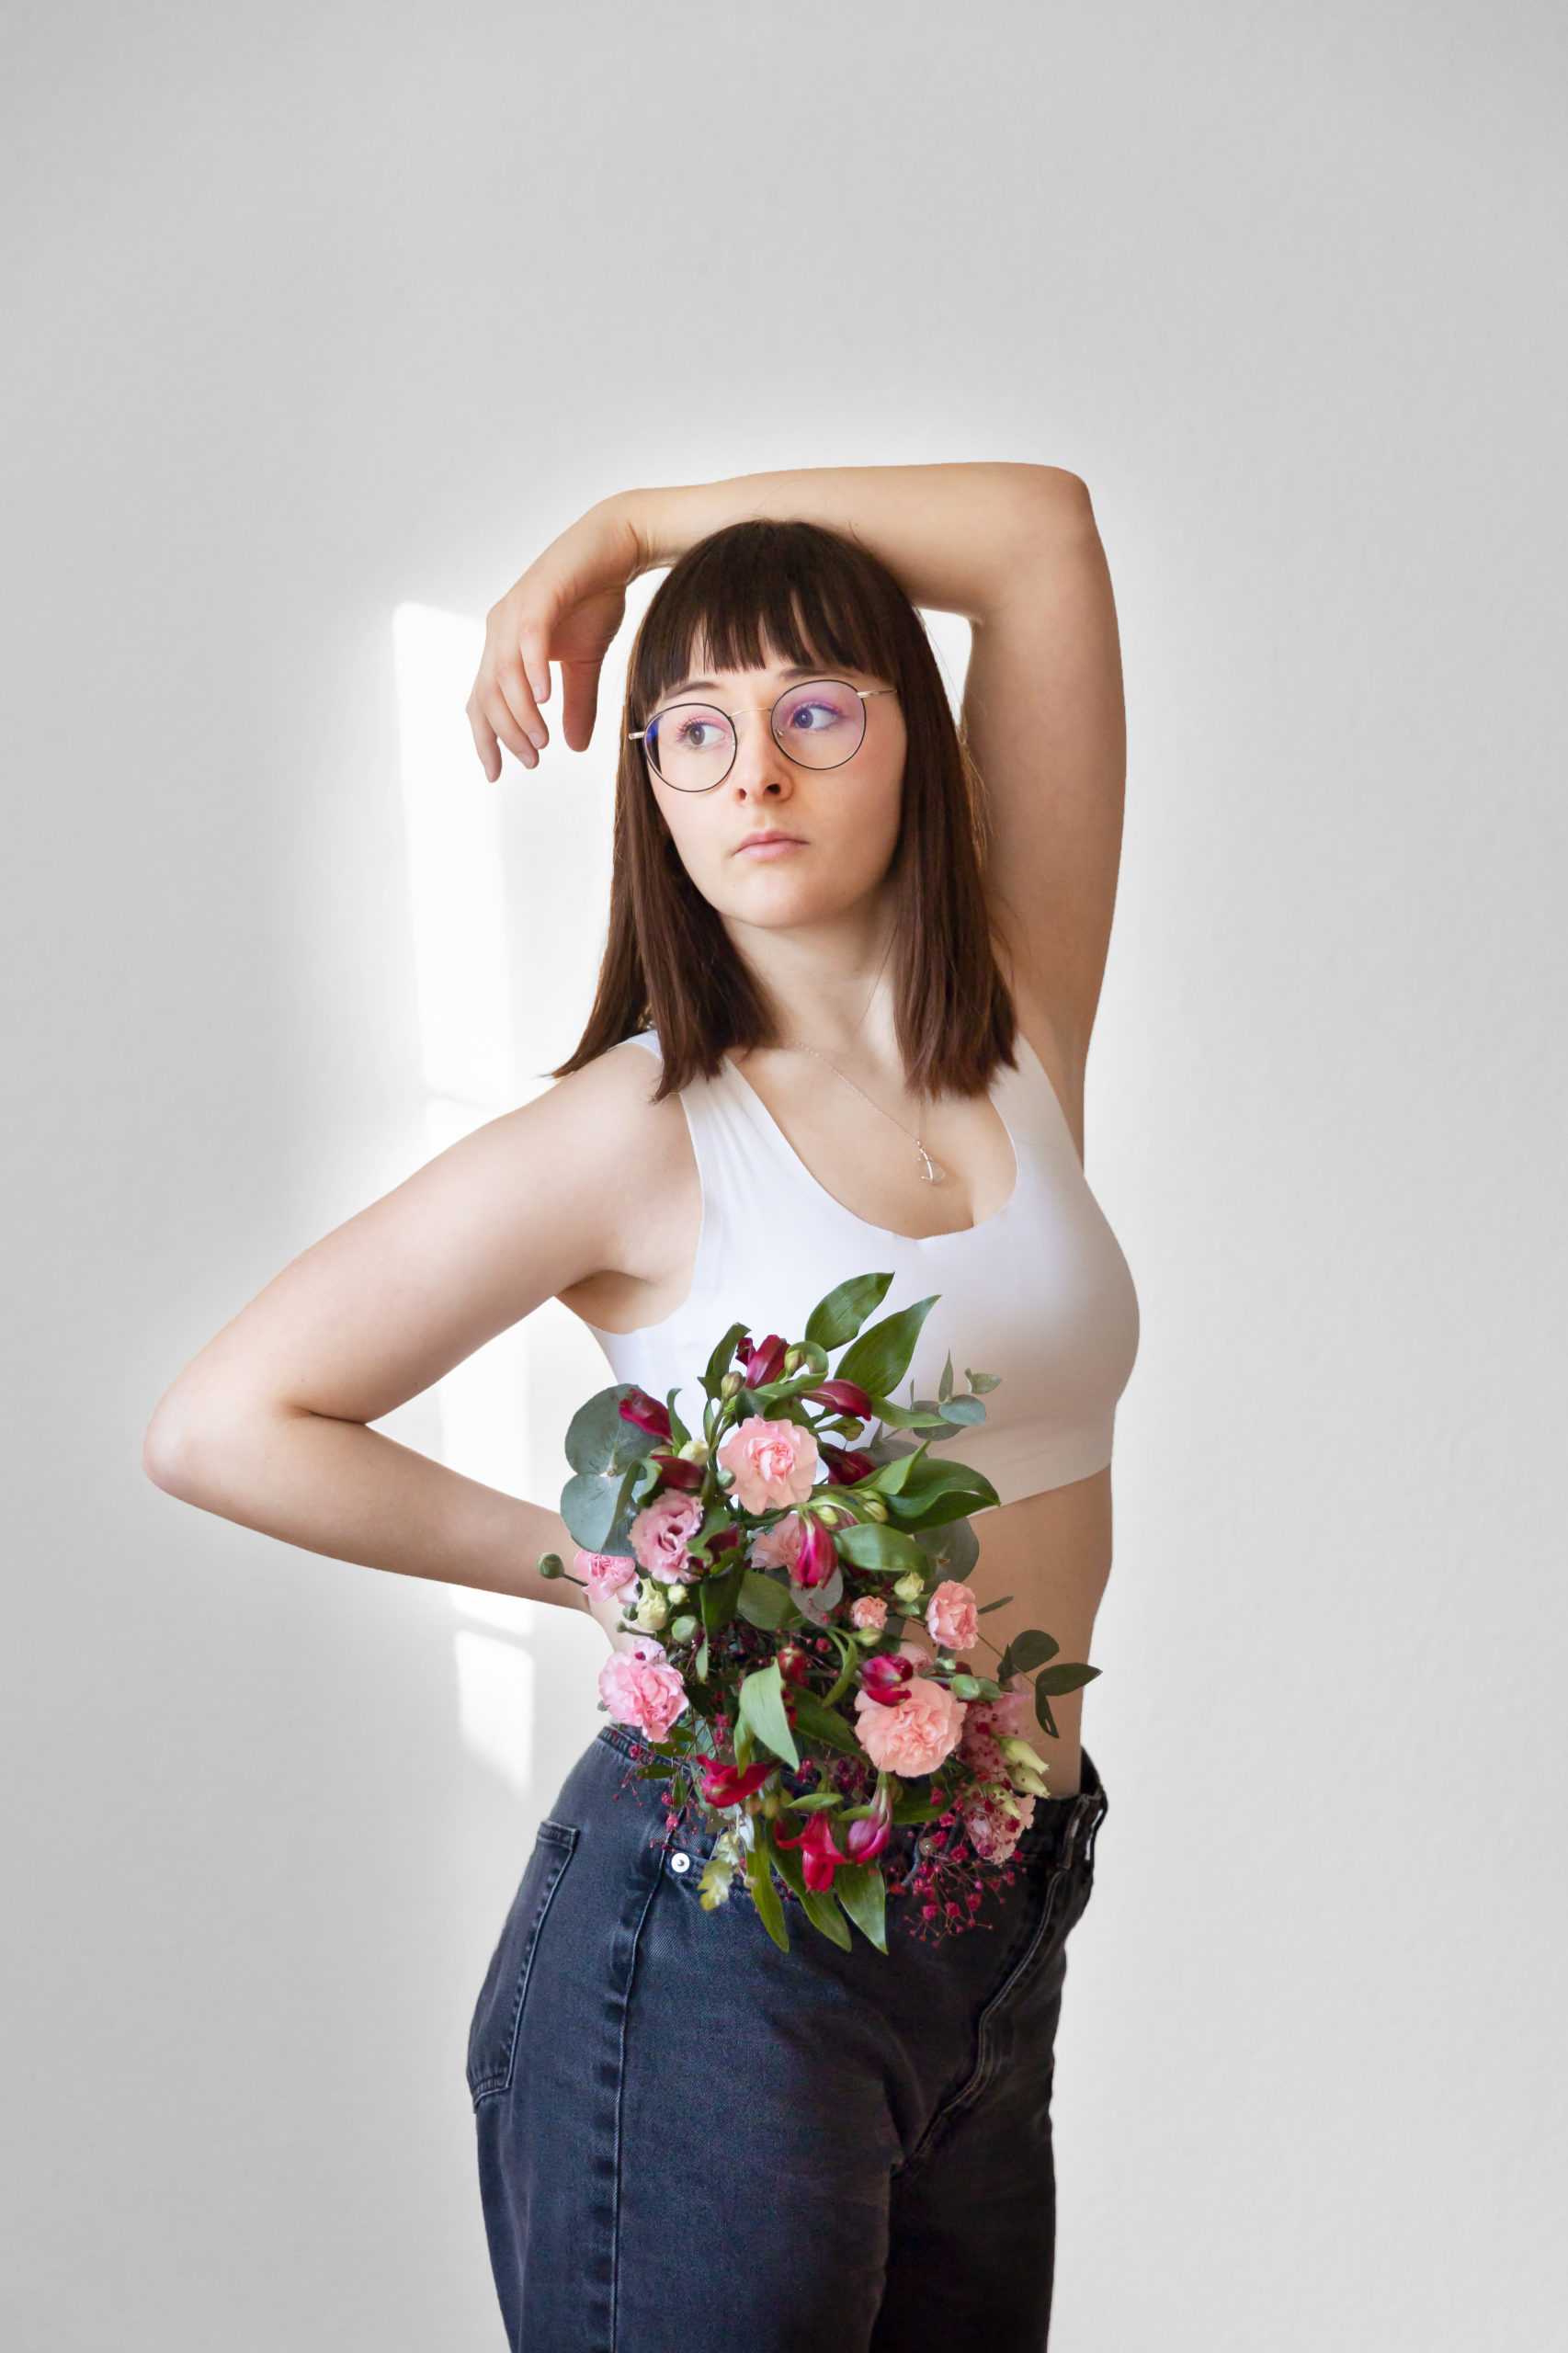 Autoportrait de la photographe avec bouquet de fleurs